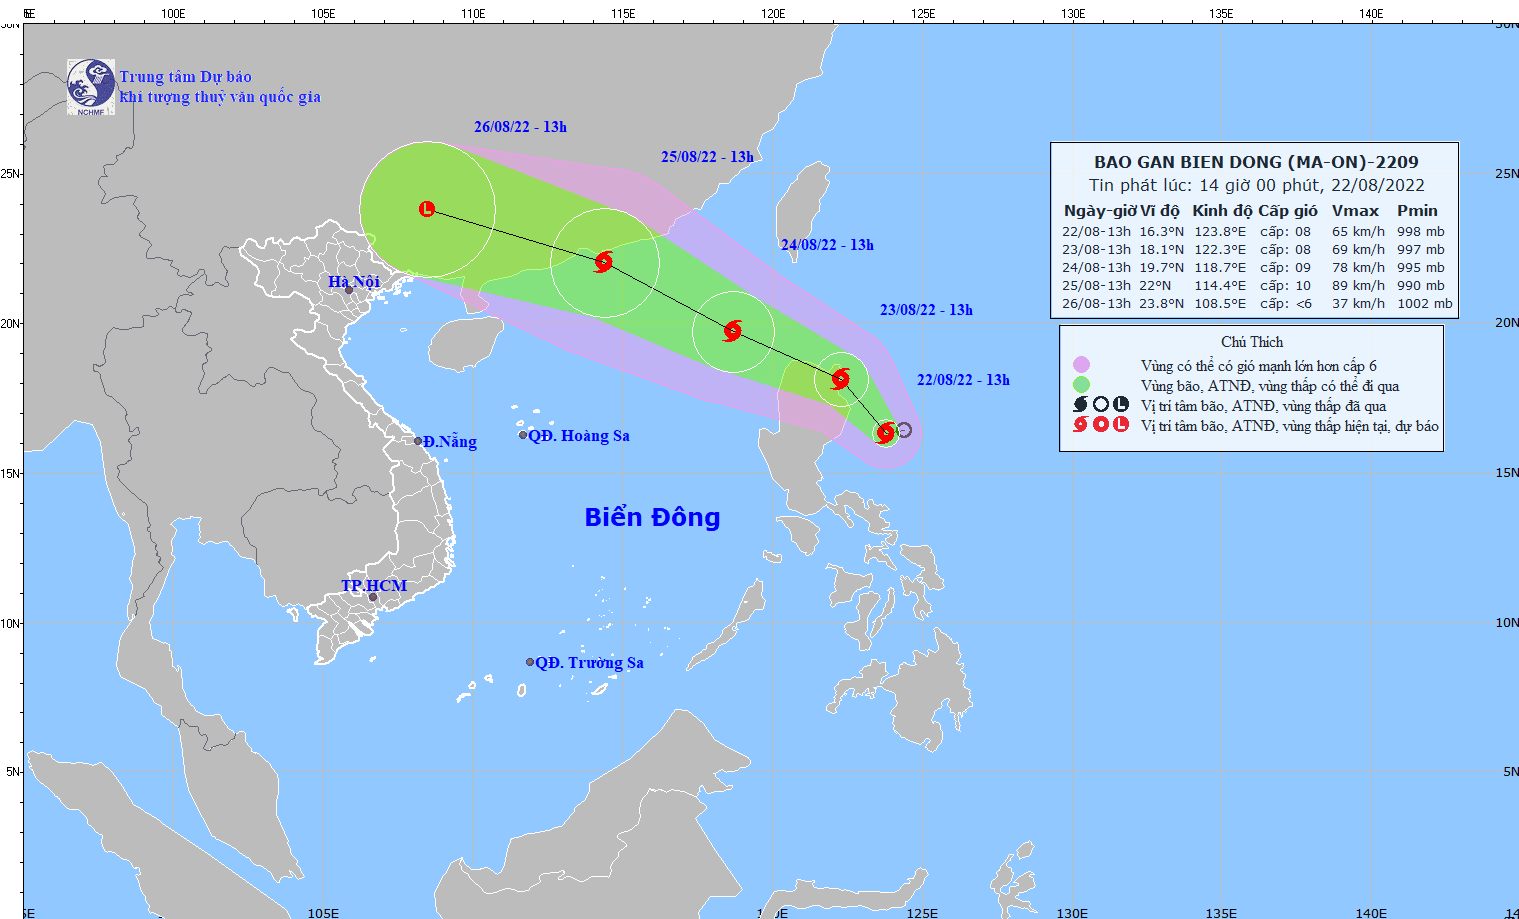 Tin bão gần Biển Đông: Ảnh hưởng của Bão Ma-on, ngày 24/8, Bắc Biển Đông sẽ có gió mạnh giật cấp 10